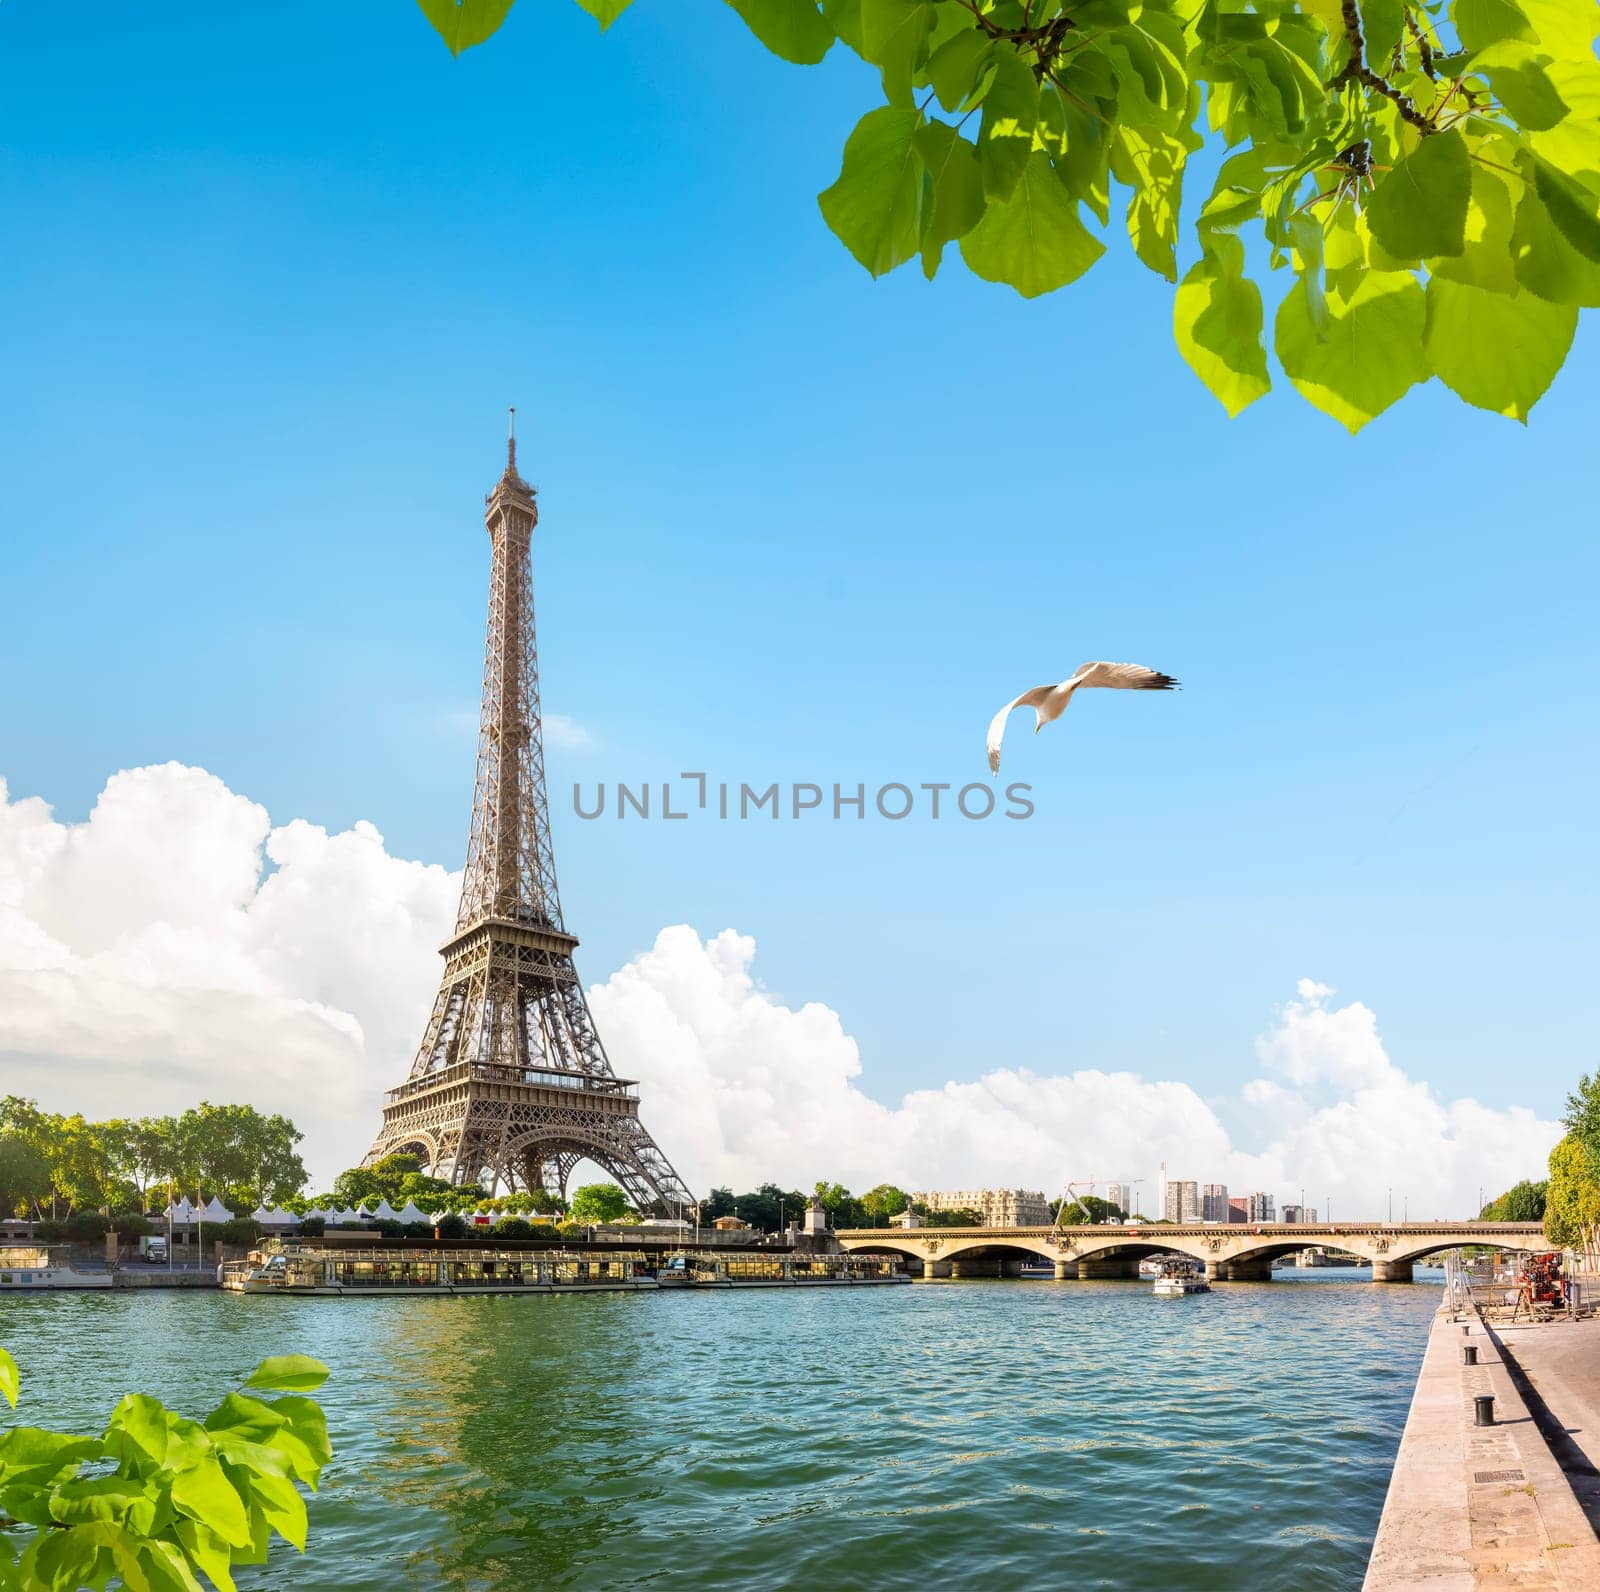 Seine in Paris with Eiffel Tower at daytime